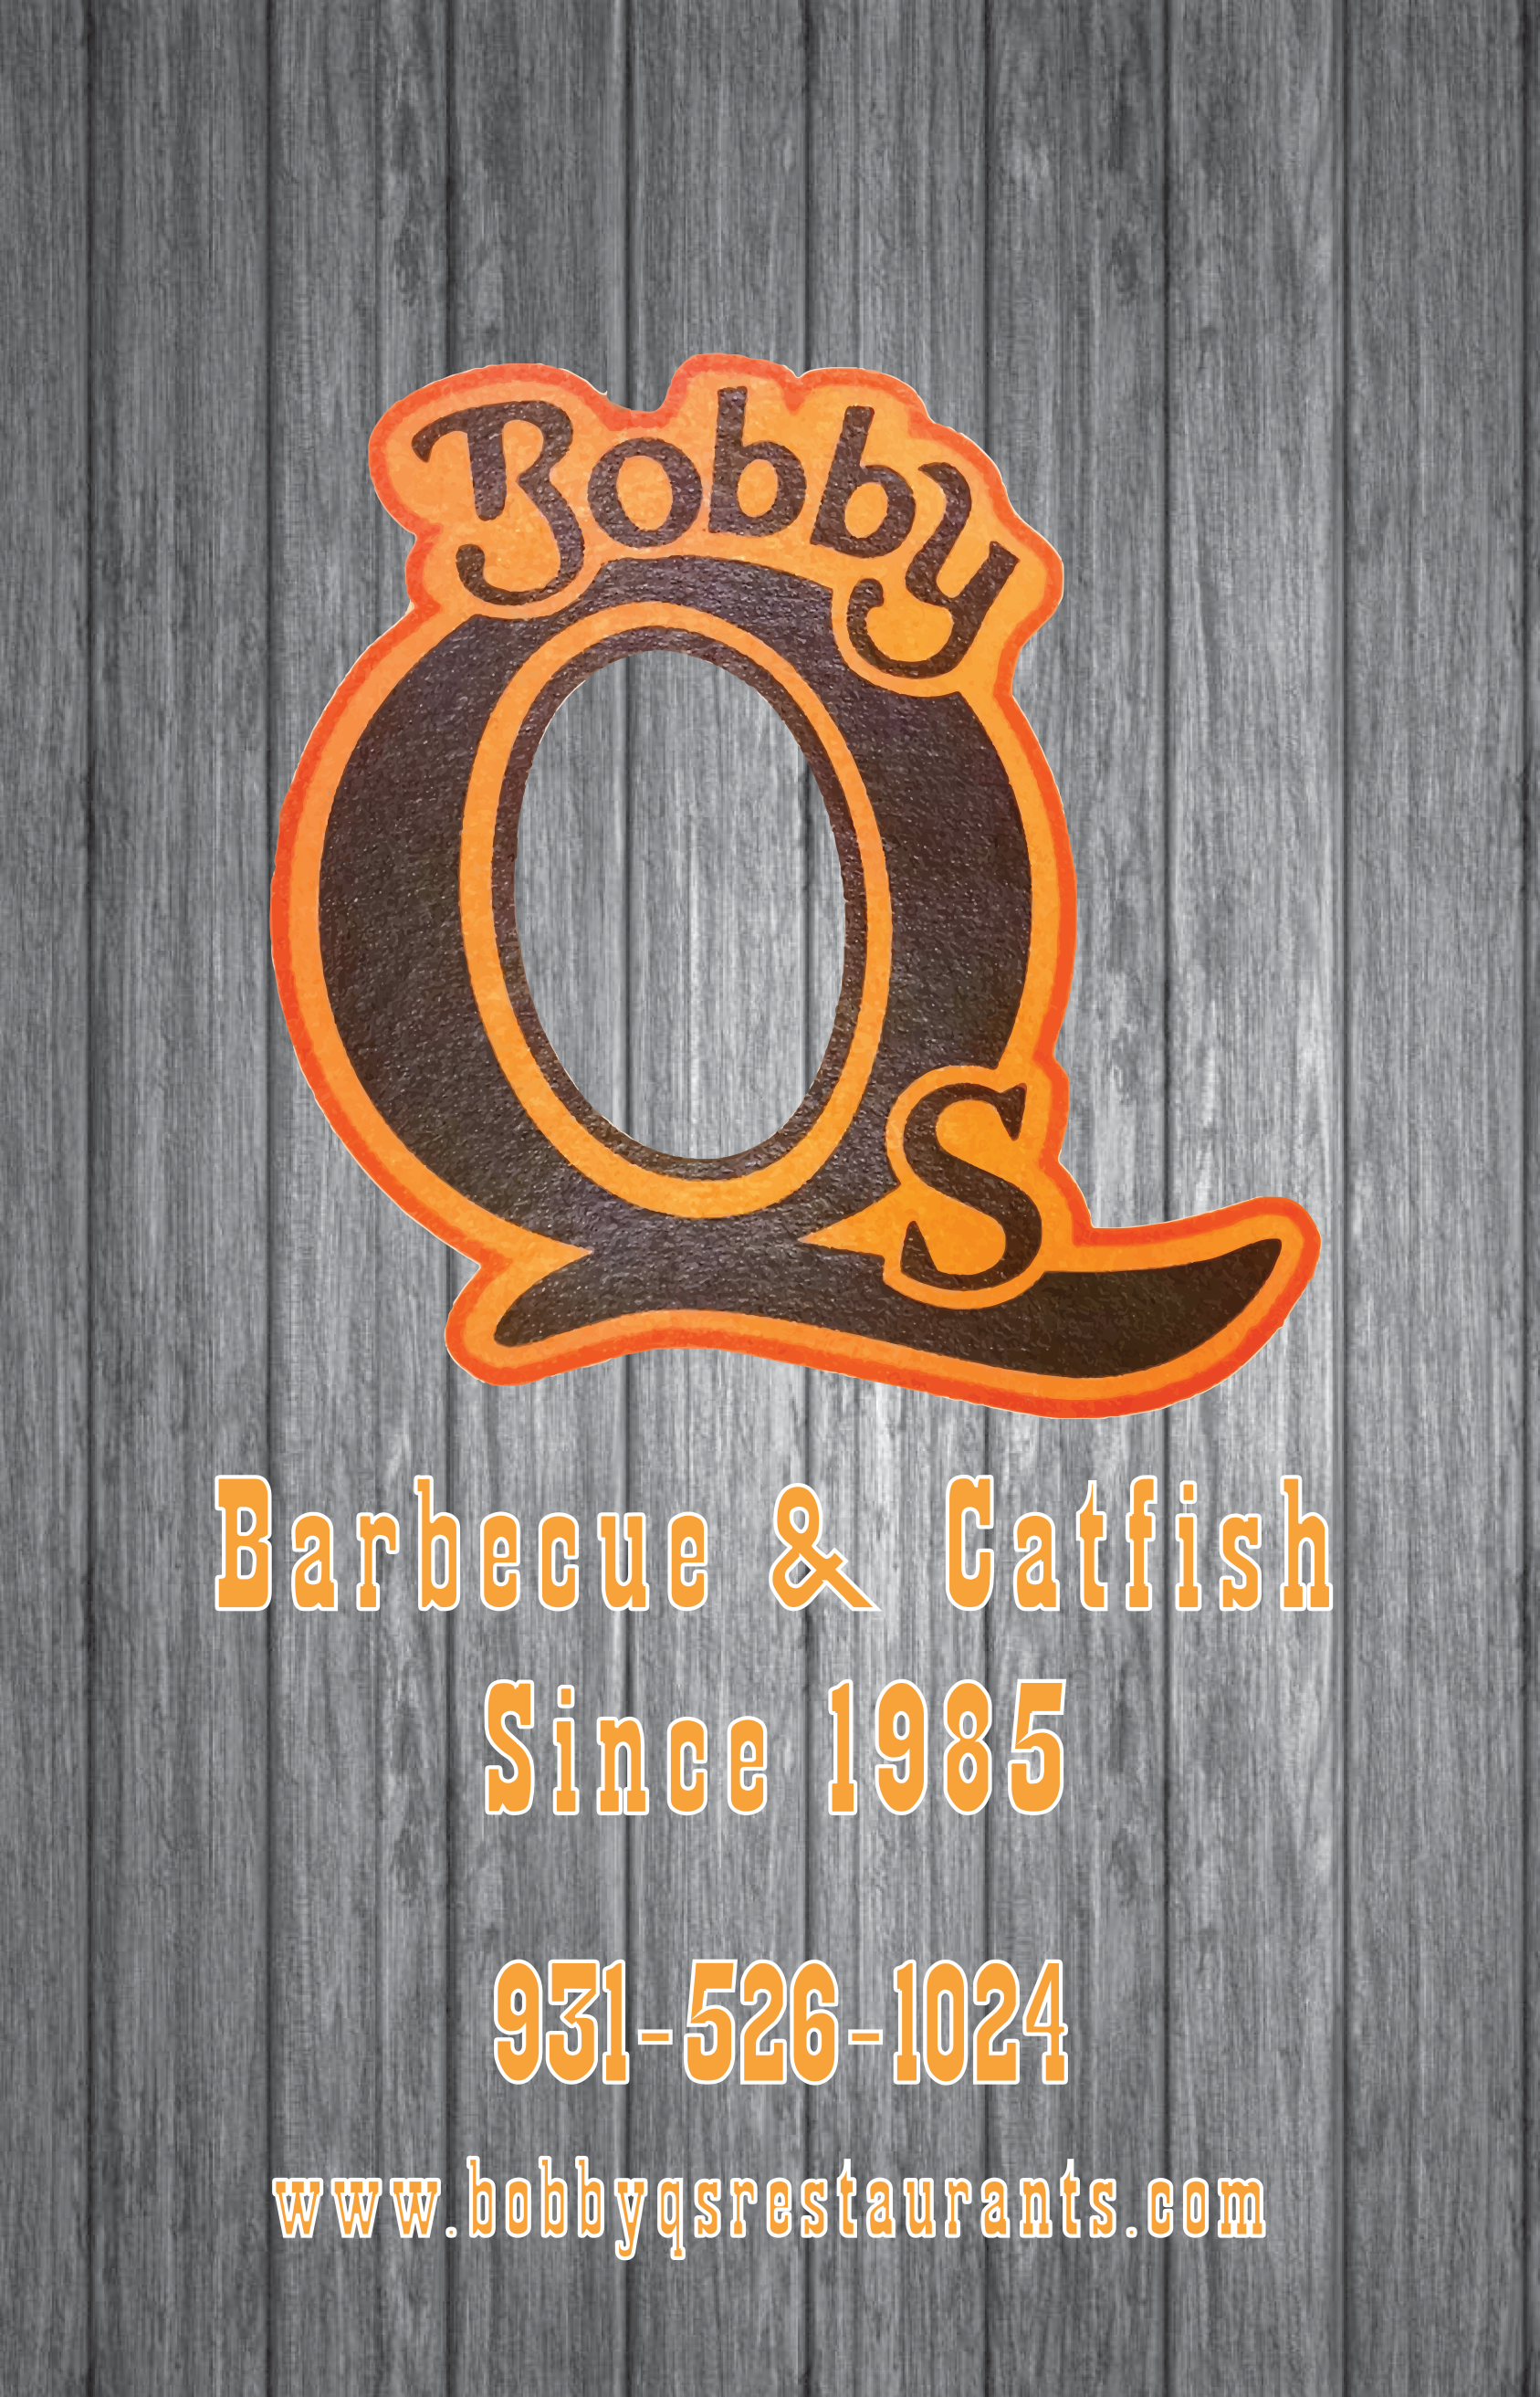 Bobby Q's Barbecue and Catfish menus